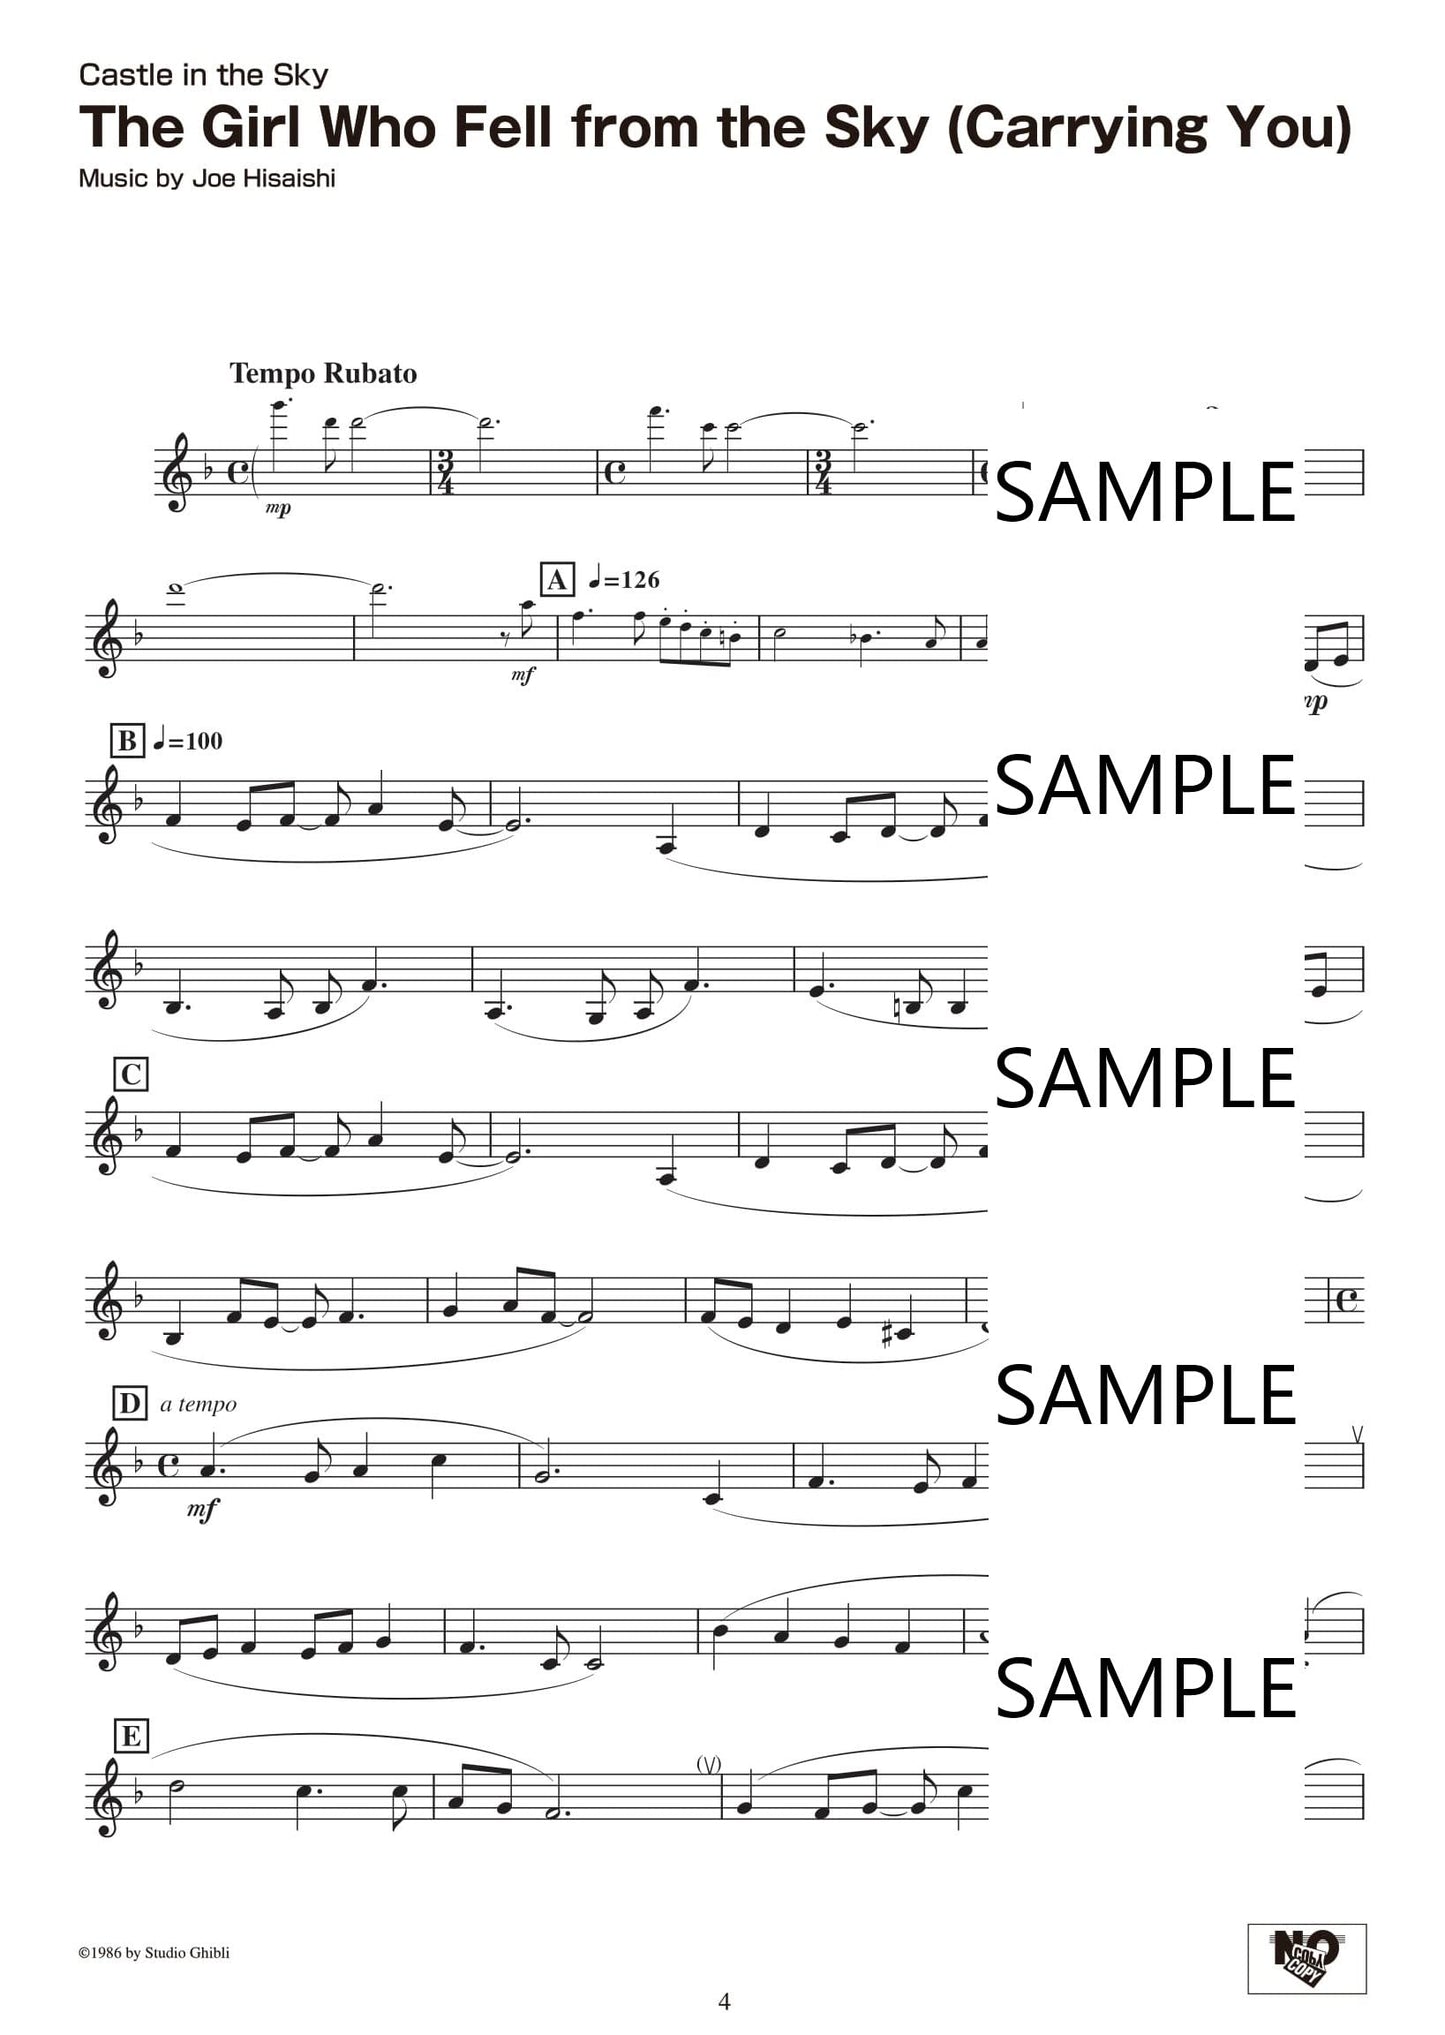 Studio Ghibli Songs für Klarinette und Klavier (Pre-Intermediate) / Englische Version Notenbuch